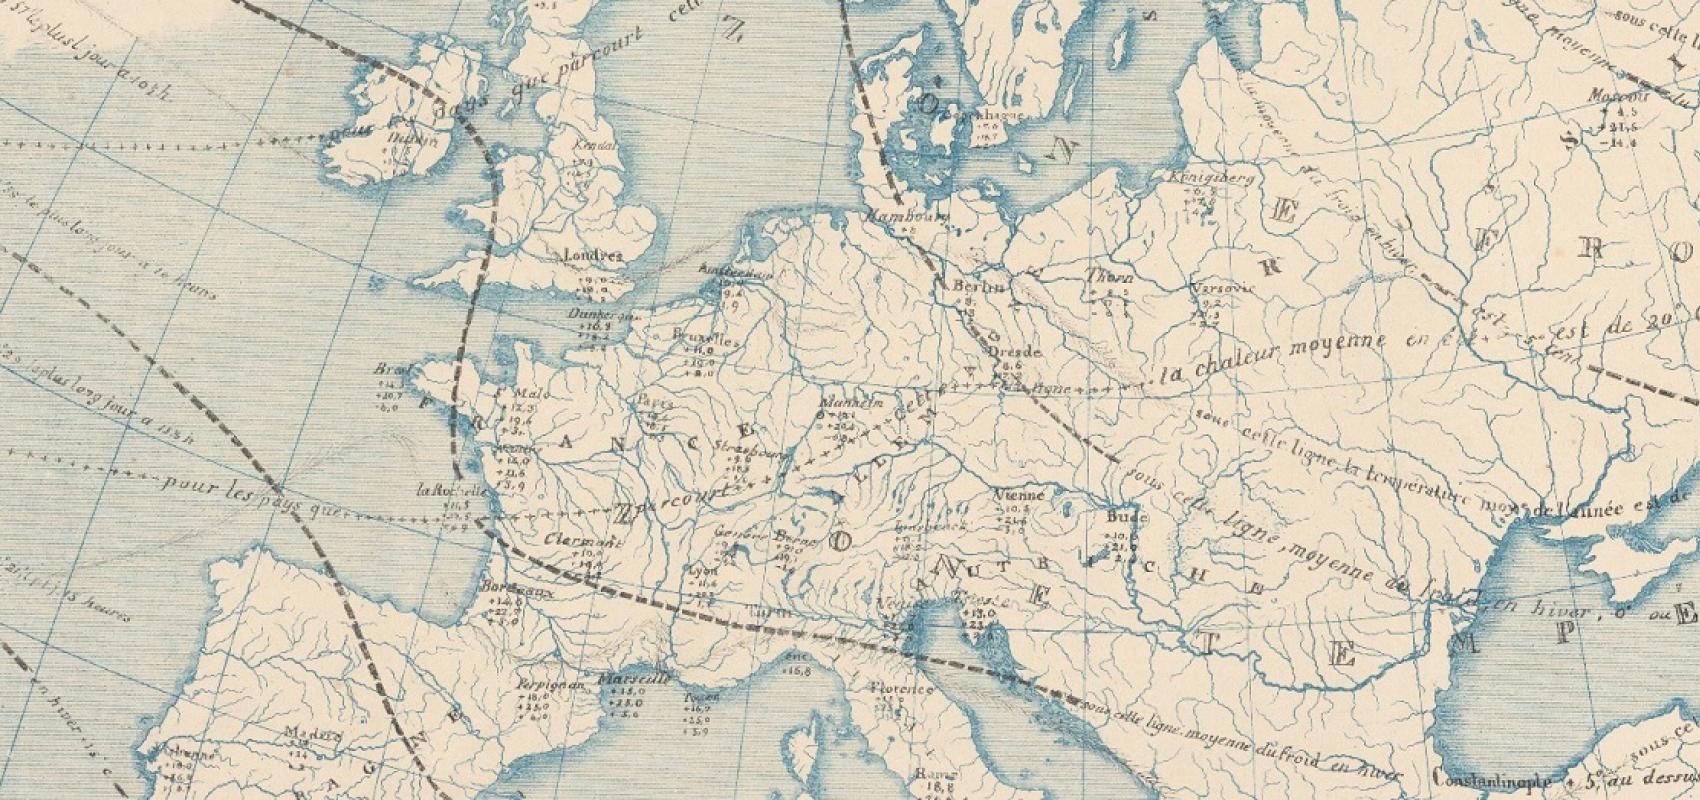 Carte météorologique ou tableau des zones ou climats physiques de l'Europe - 1842 - Constant Desjardins - BnF 